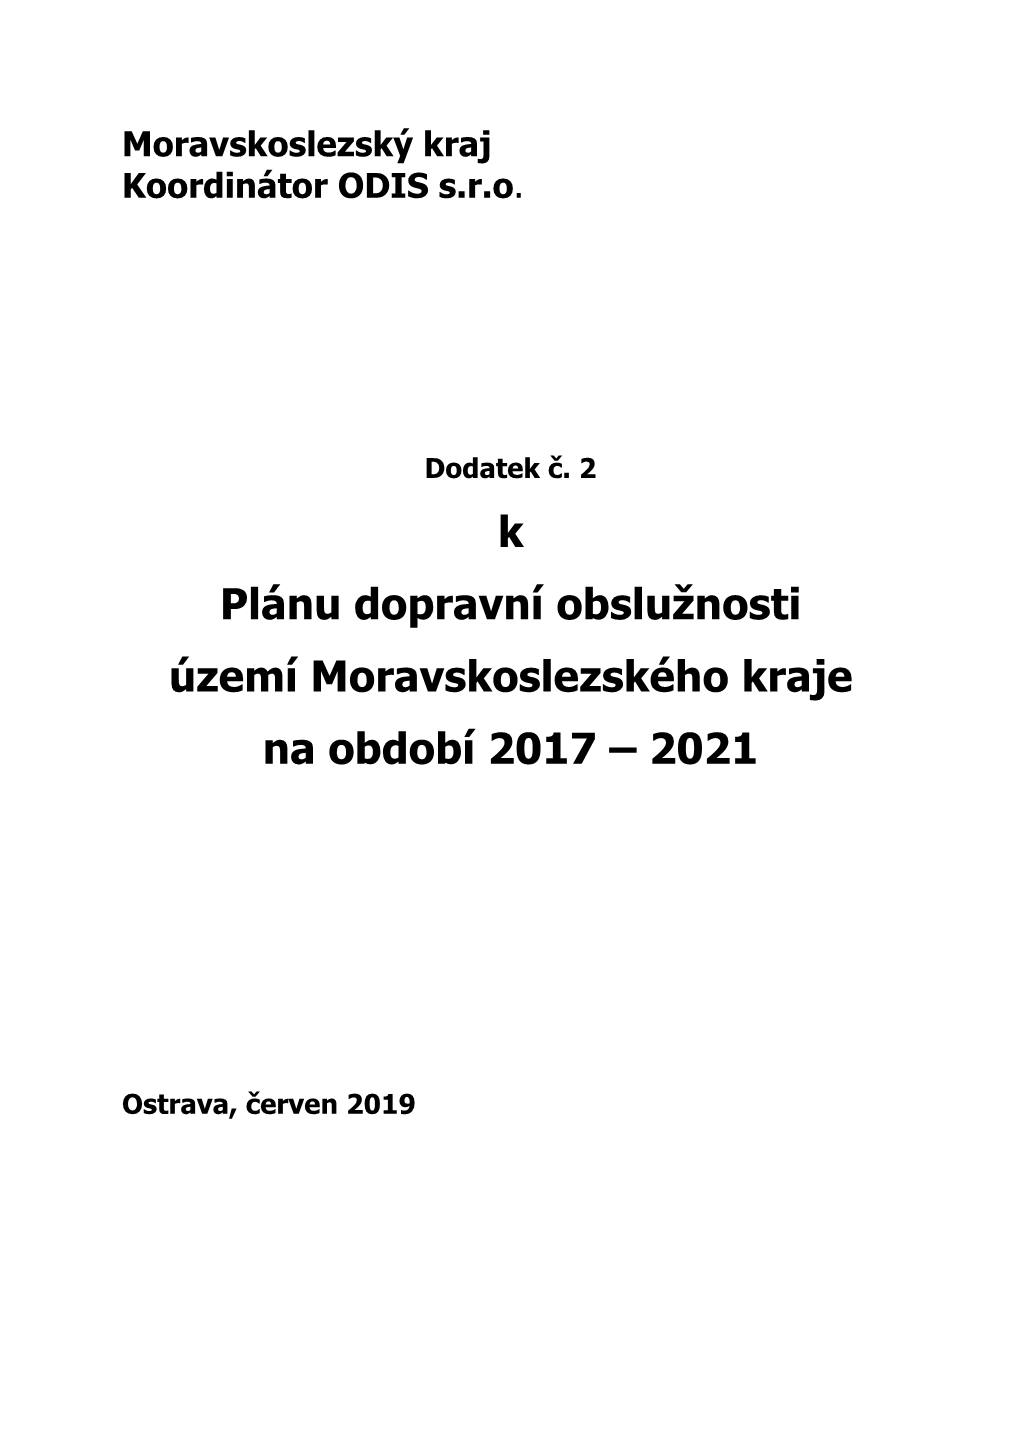 Dodatek Č. 2 K Plánu Dopravní Obslužnosti Území Moravskoslezského Kraje Na Období 2017 – 2021